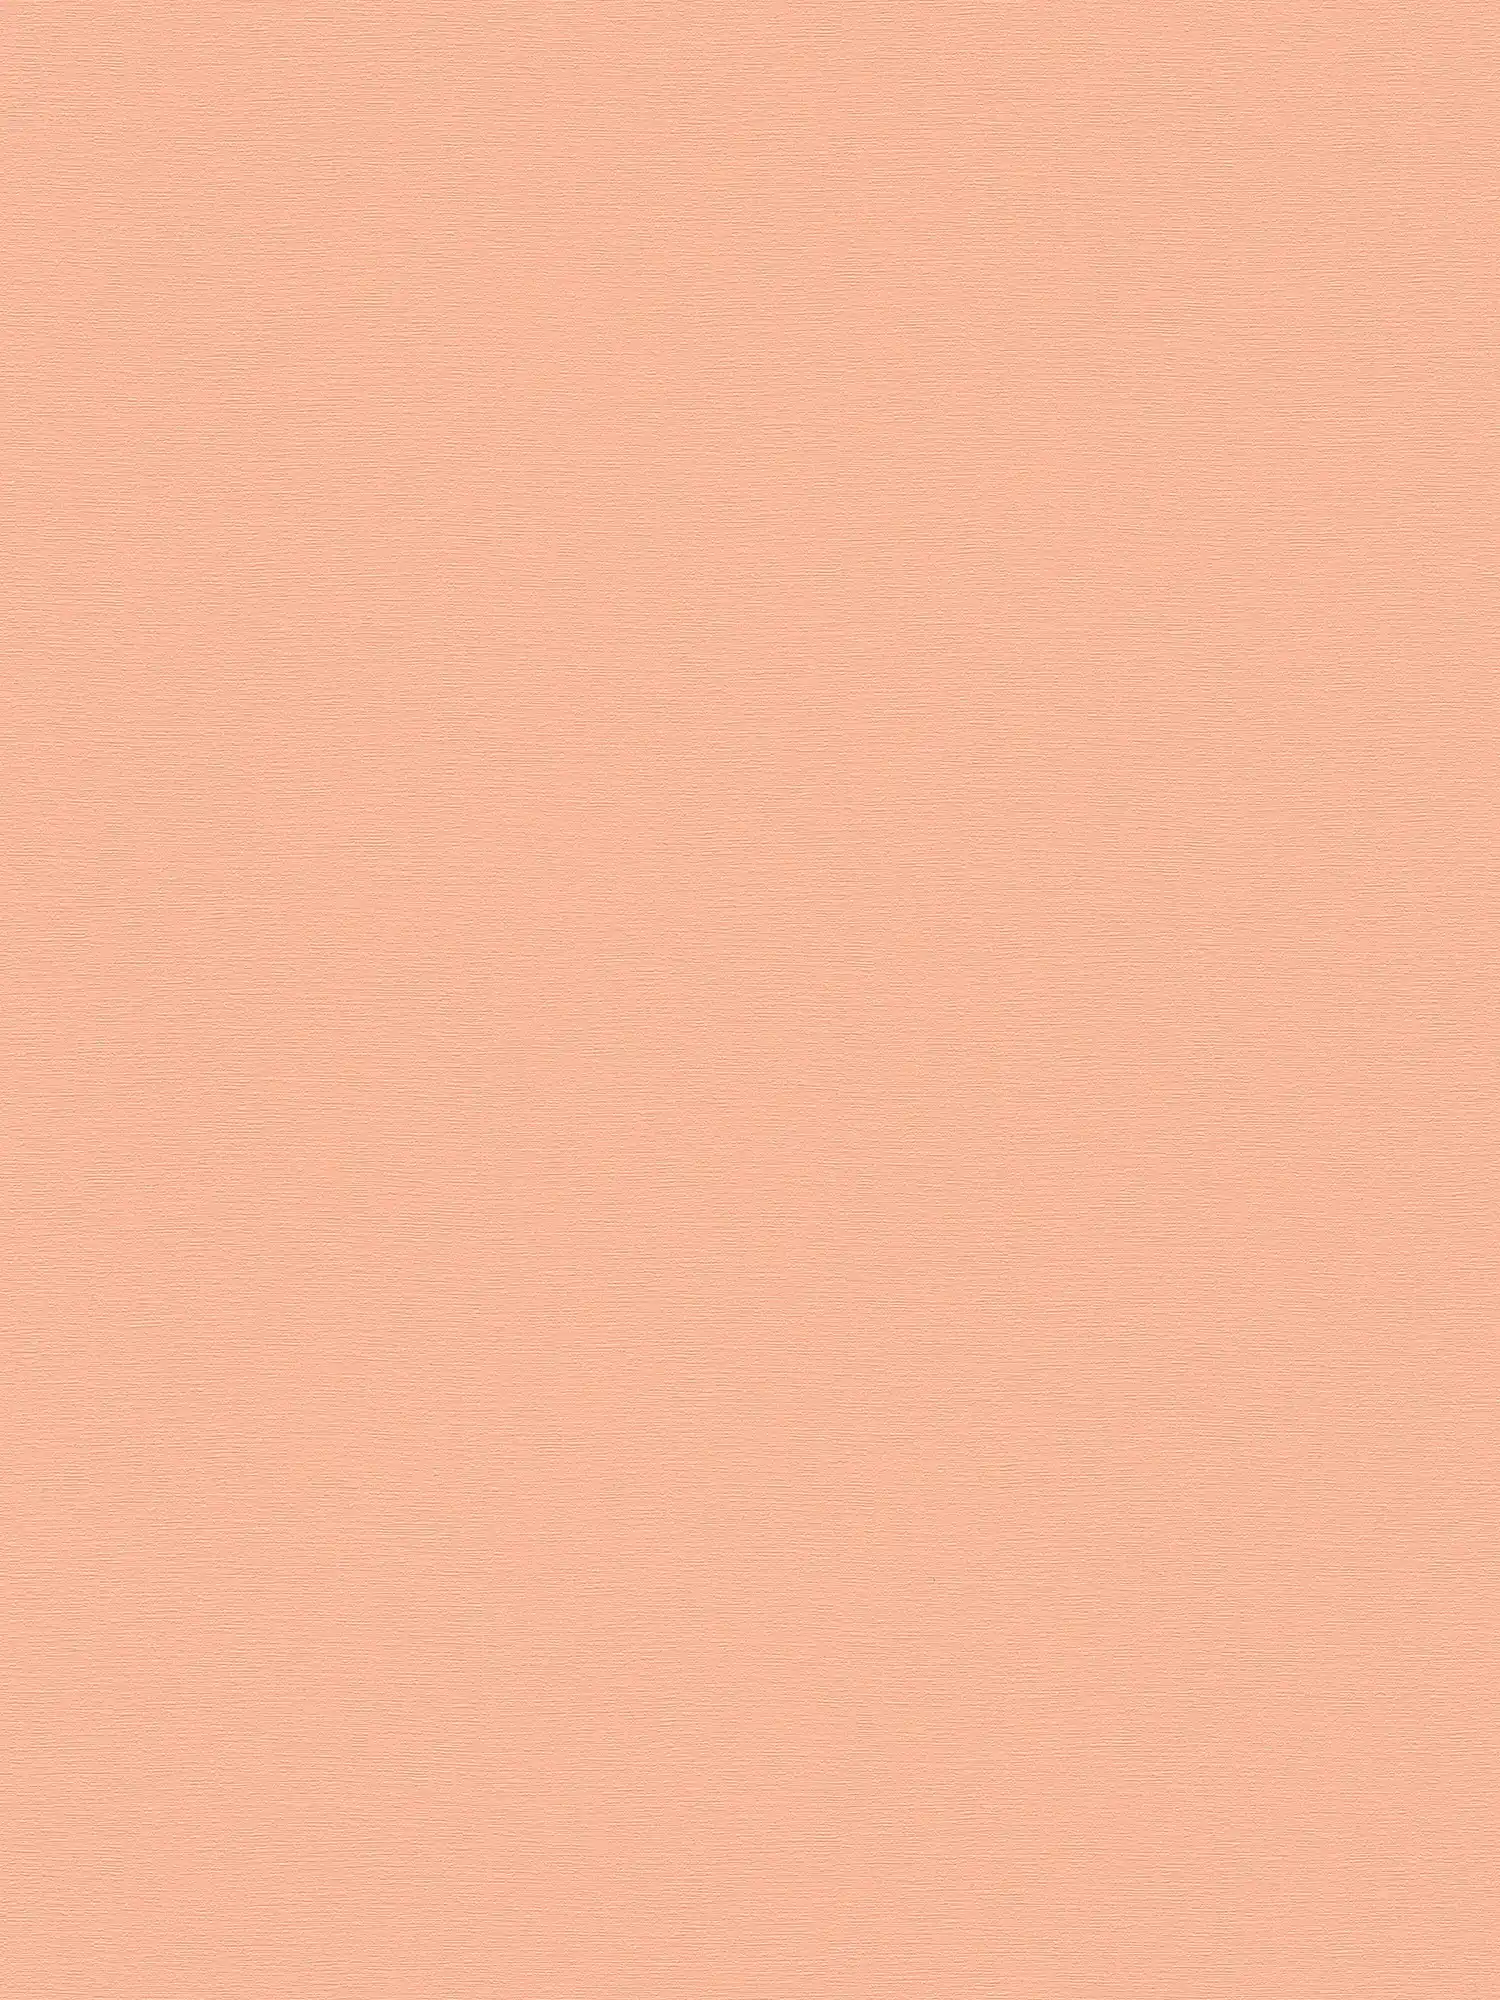         Einfarbige Vliestapete mit sanfter Struktur – Rosa
    